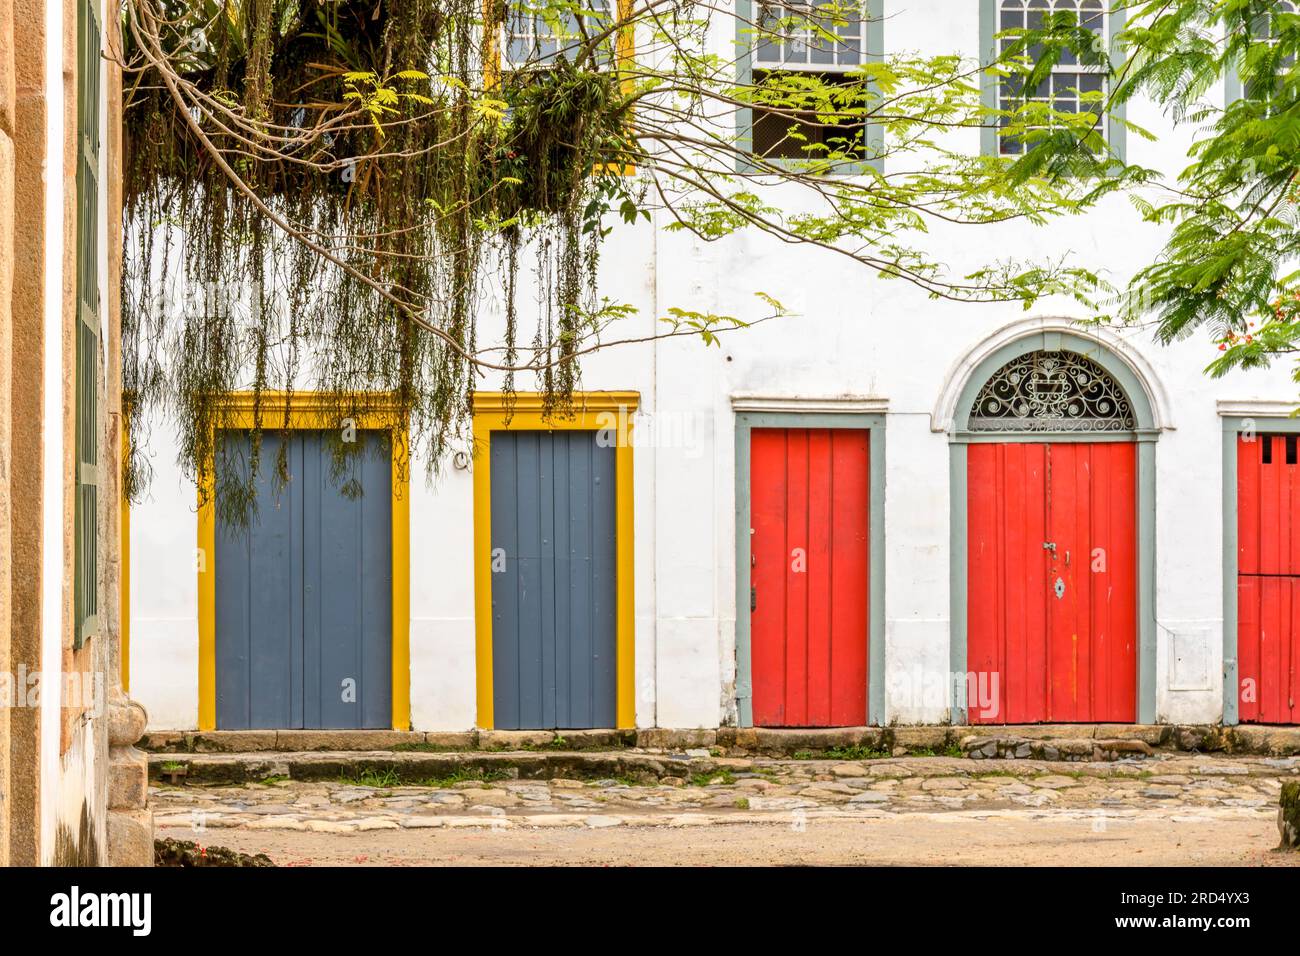 Façade de maisons colorées dans le style colonial dans les rues de la ville de Paraty sur la côte de l'état de Rio de Janeiro, Brésil Banque D'Images